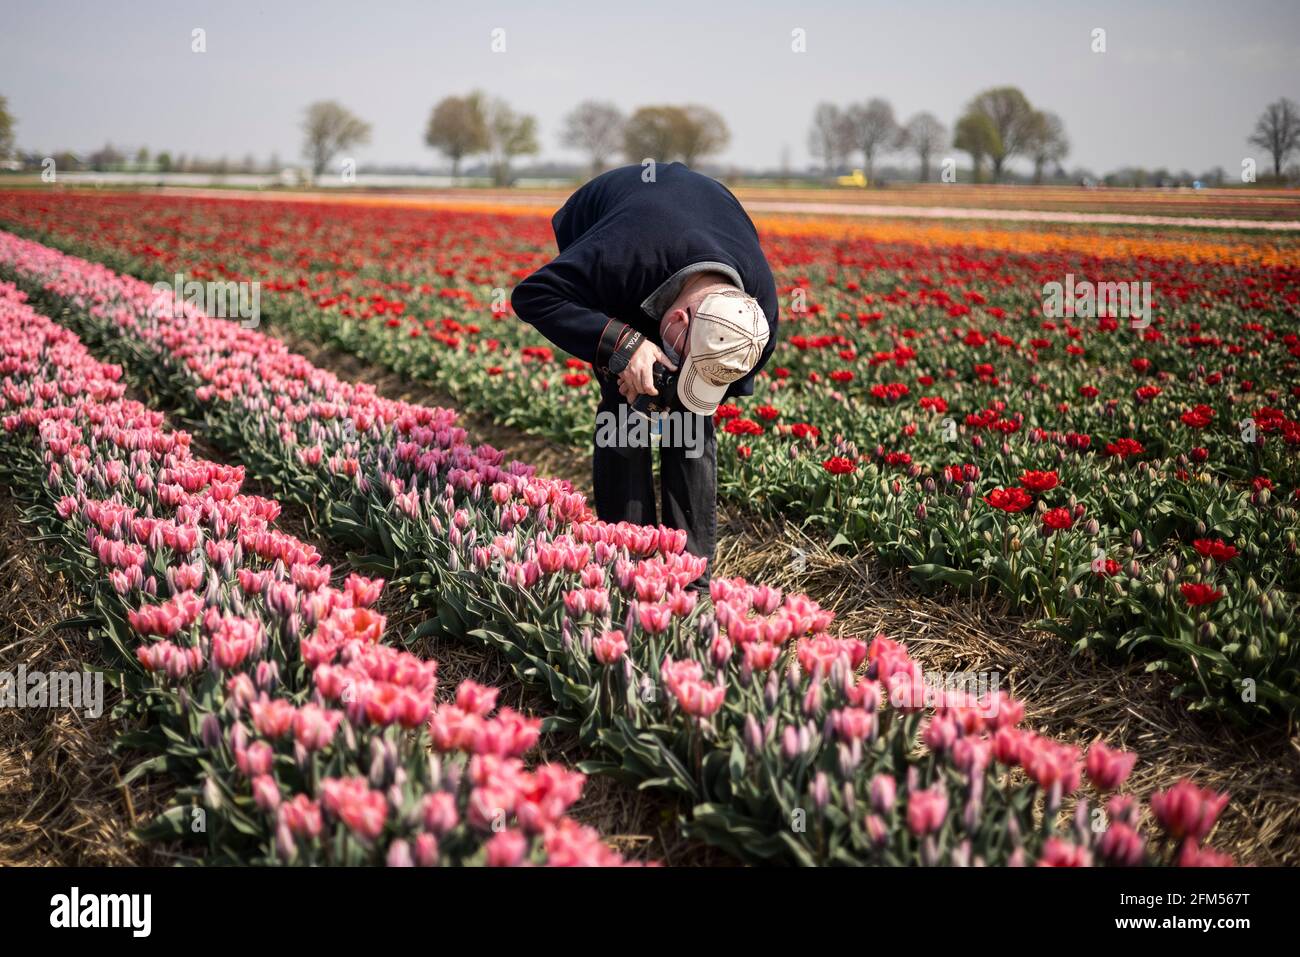 Grevenbroich, 21.04.21: Tulpenfeld, ein Mann fotografiert die Tulpen. Foto: Pressefoto Mika Volkmann Banque D'Images